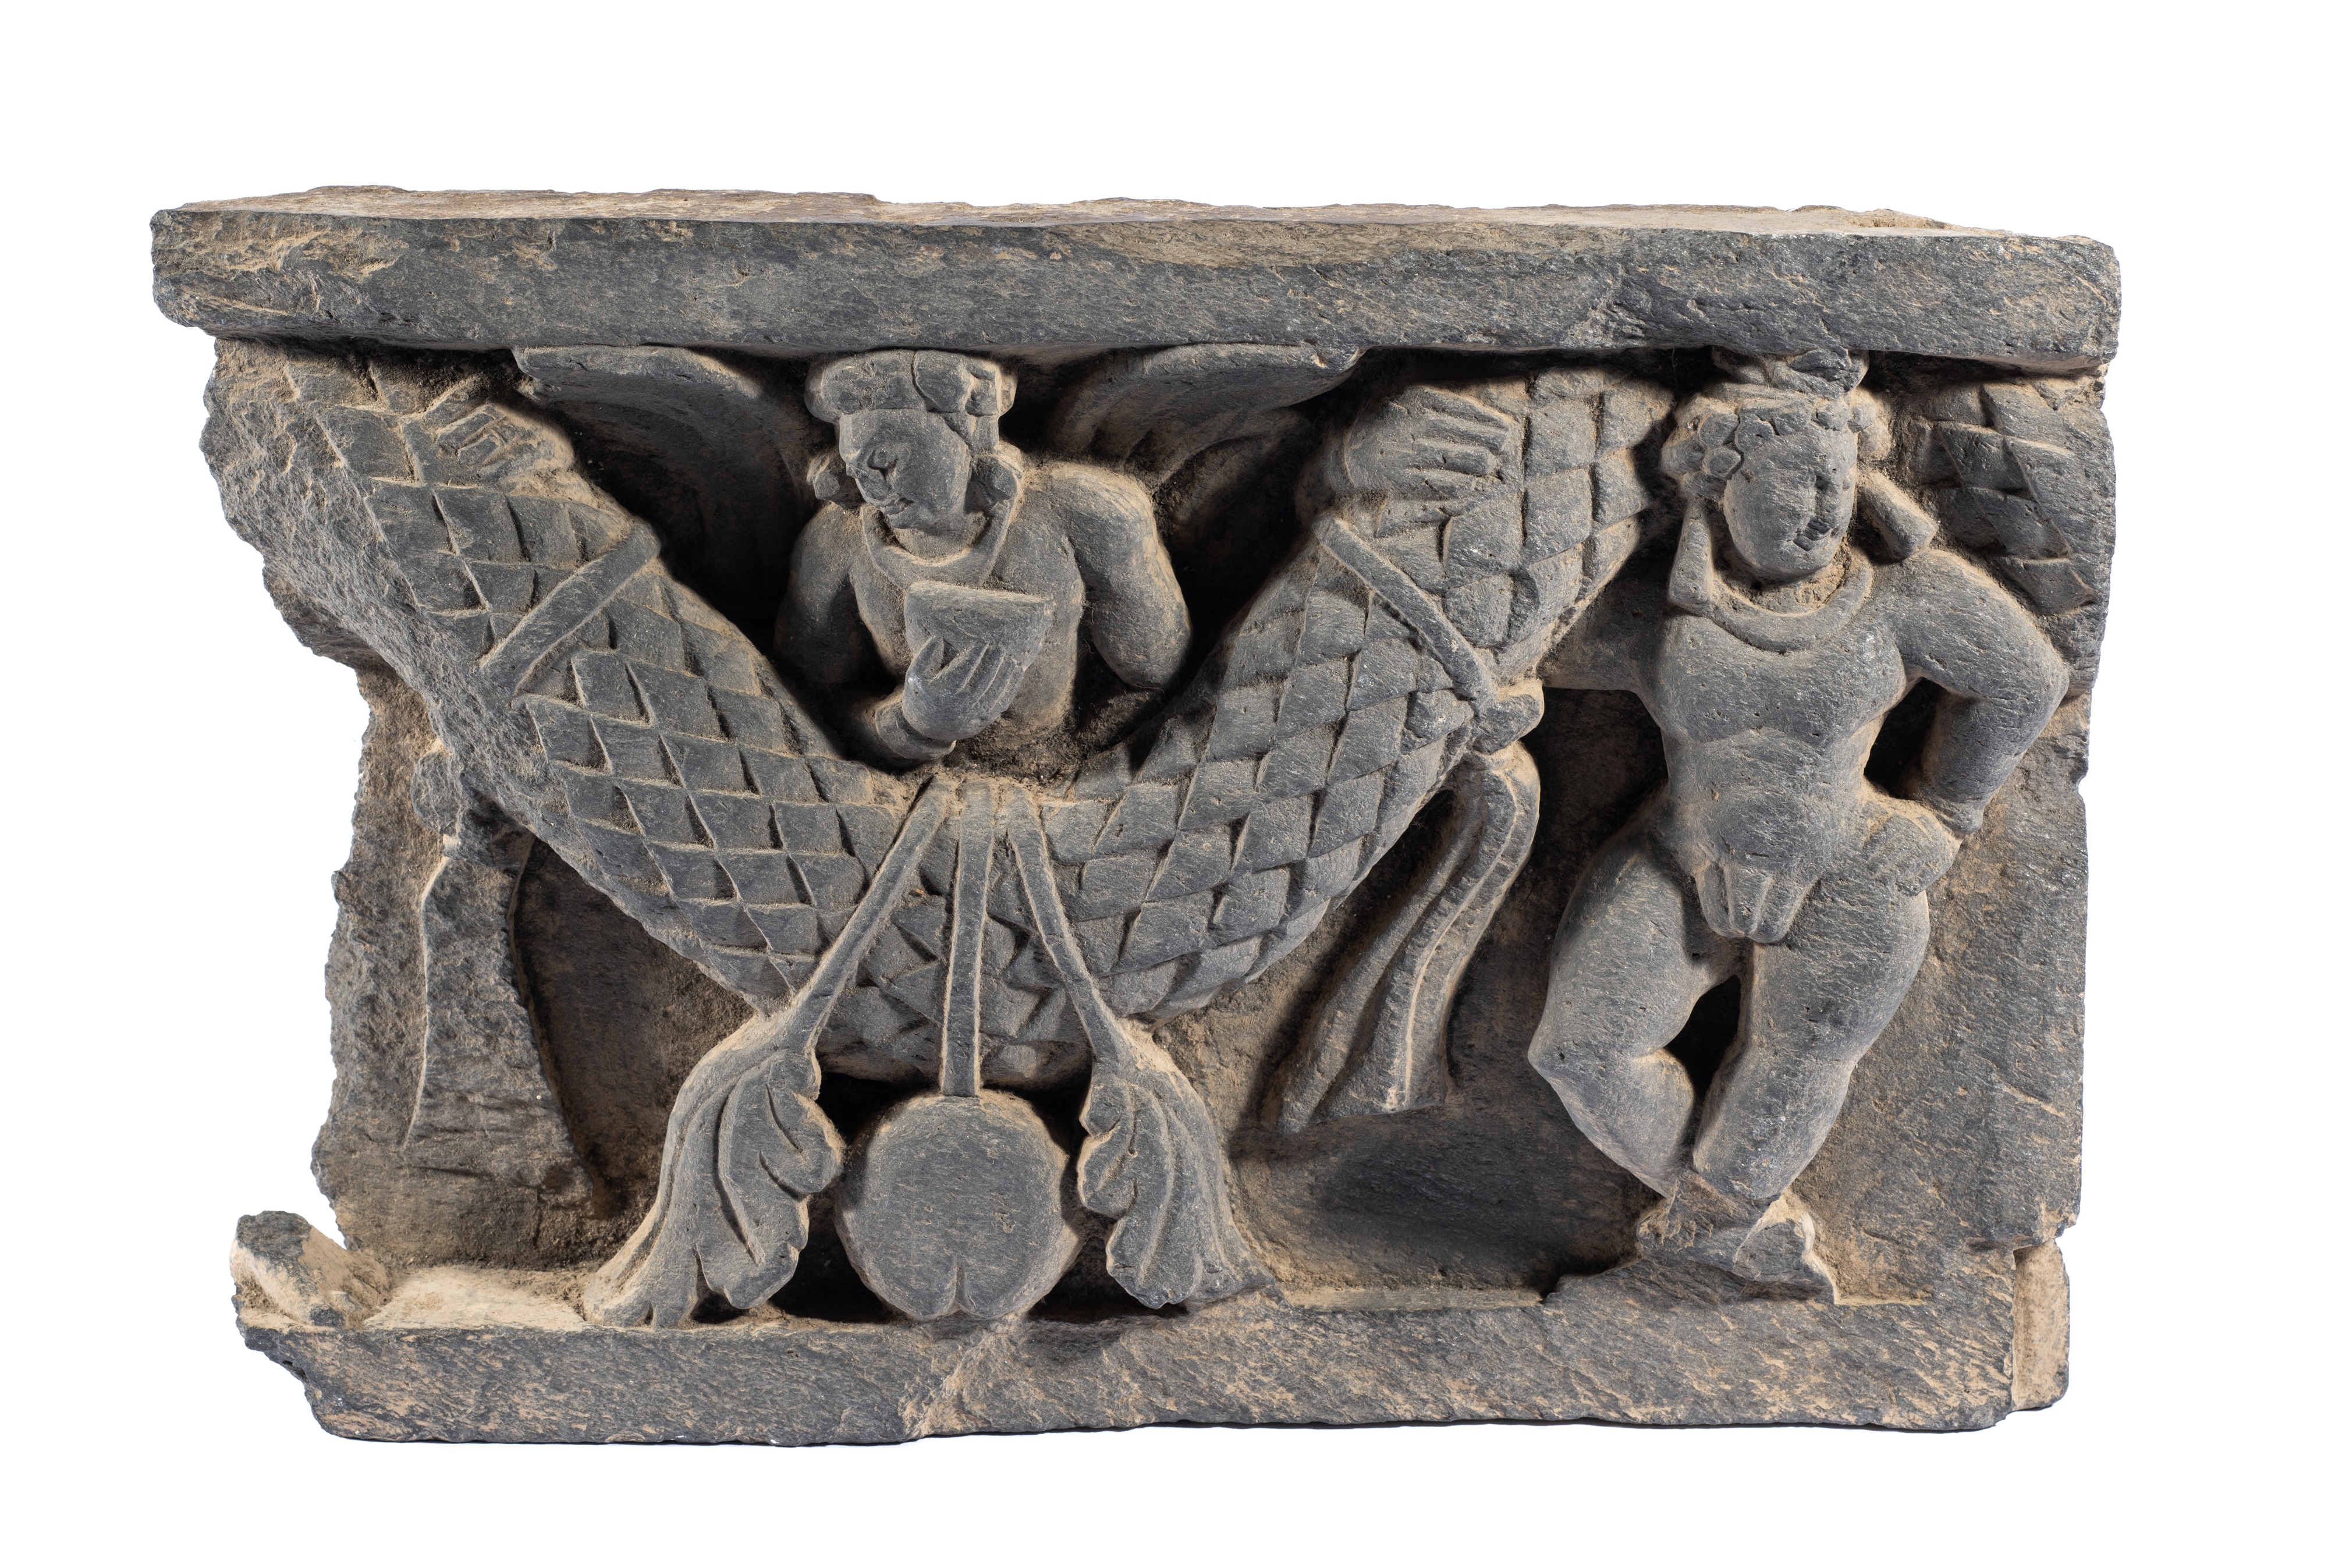 A GANDHARA GREY SCHIST RELIEF PANEL, NORTH-WESTERN PAKISTAN, 3RD/4TH CENTURY